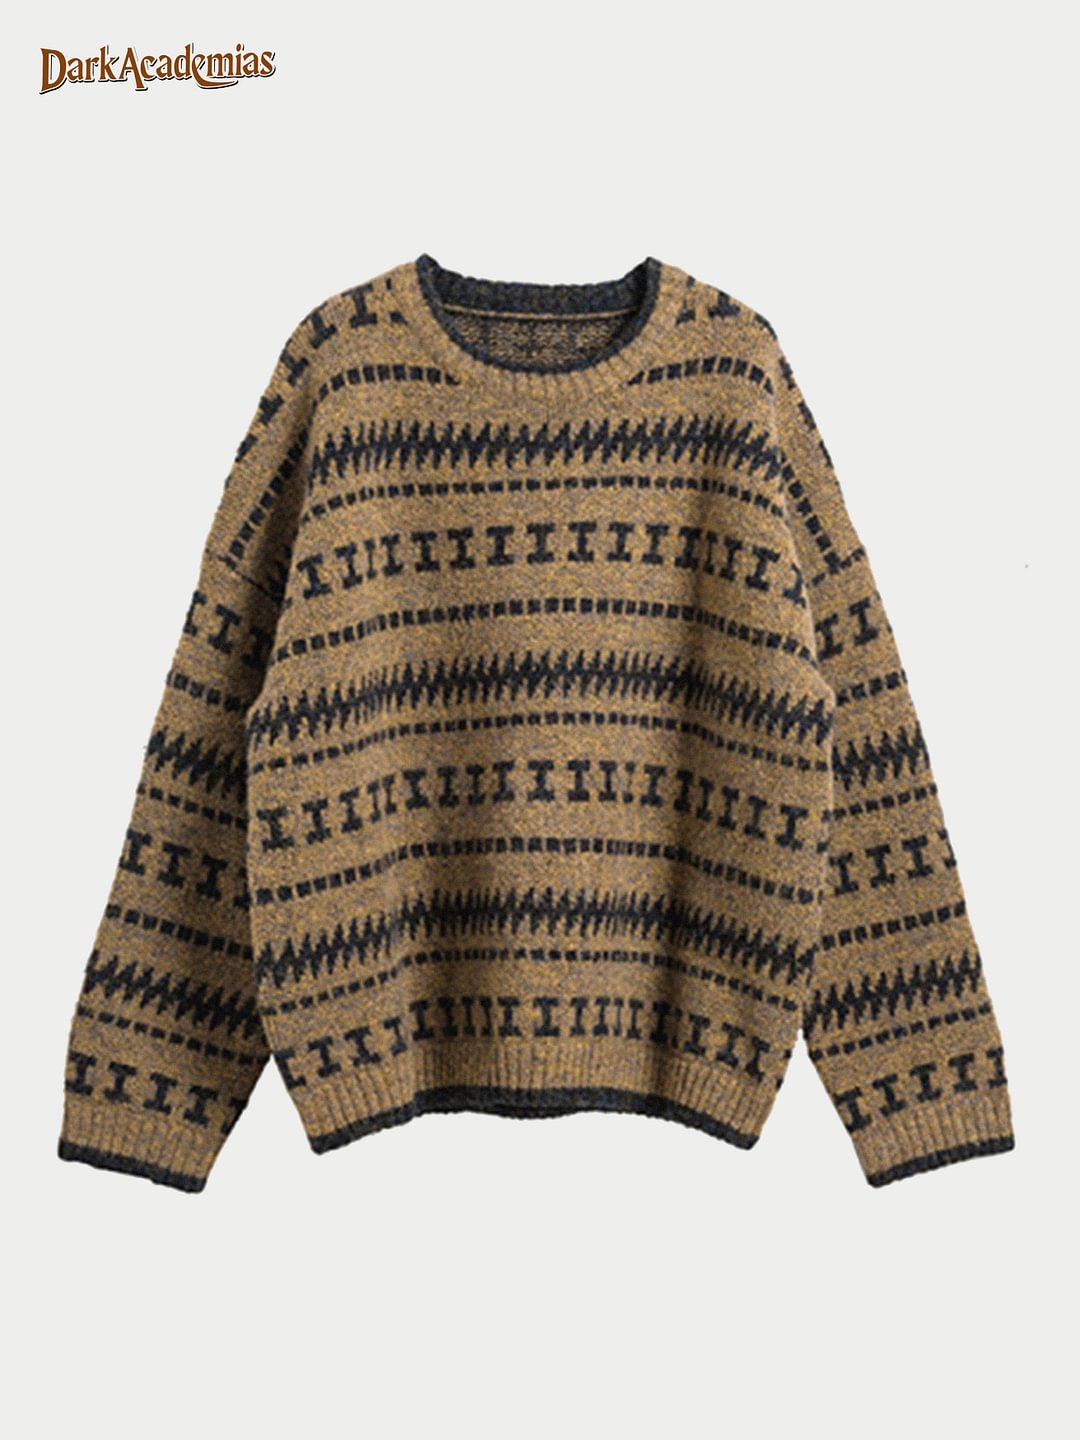 Darkacademias Tone Dark French Stripe Sweater